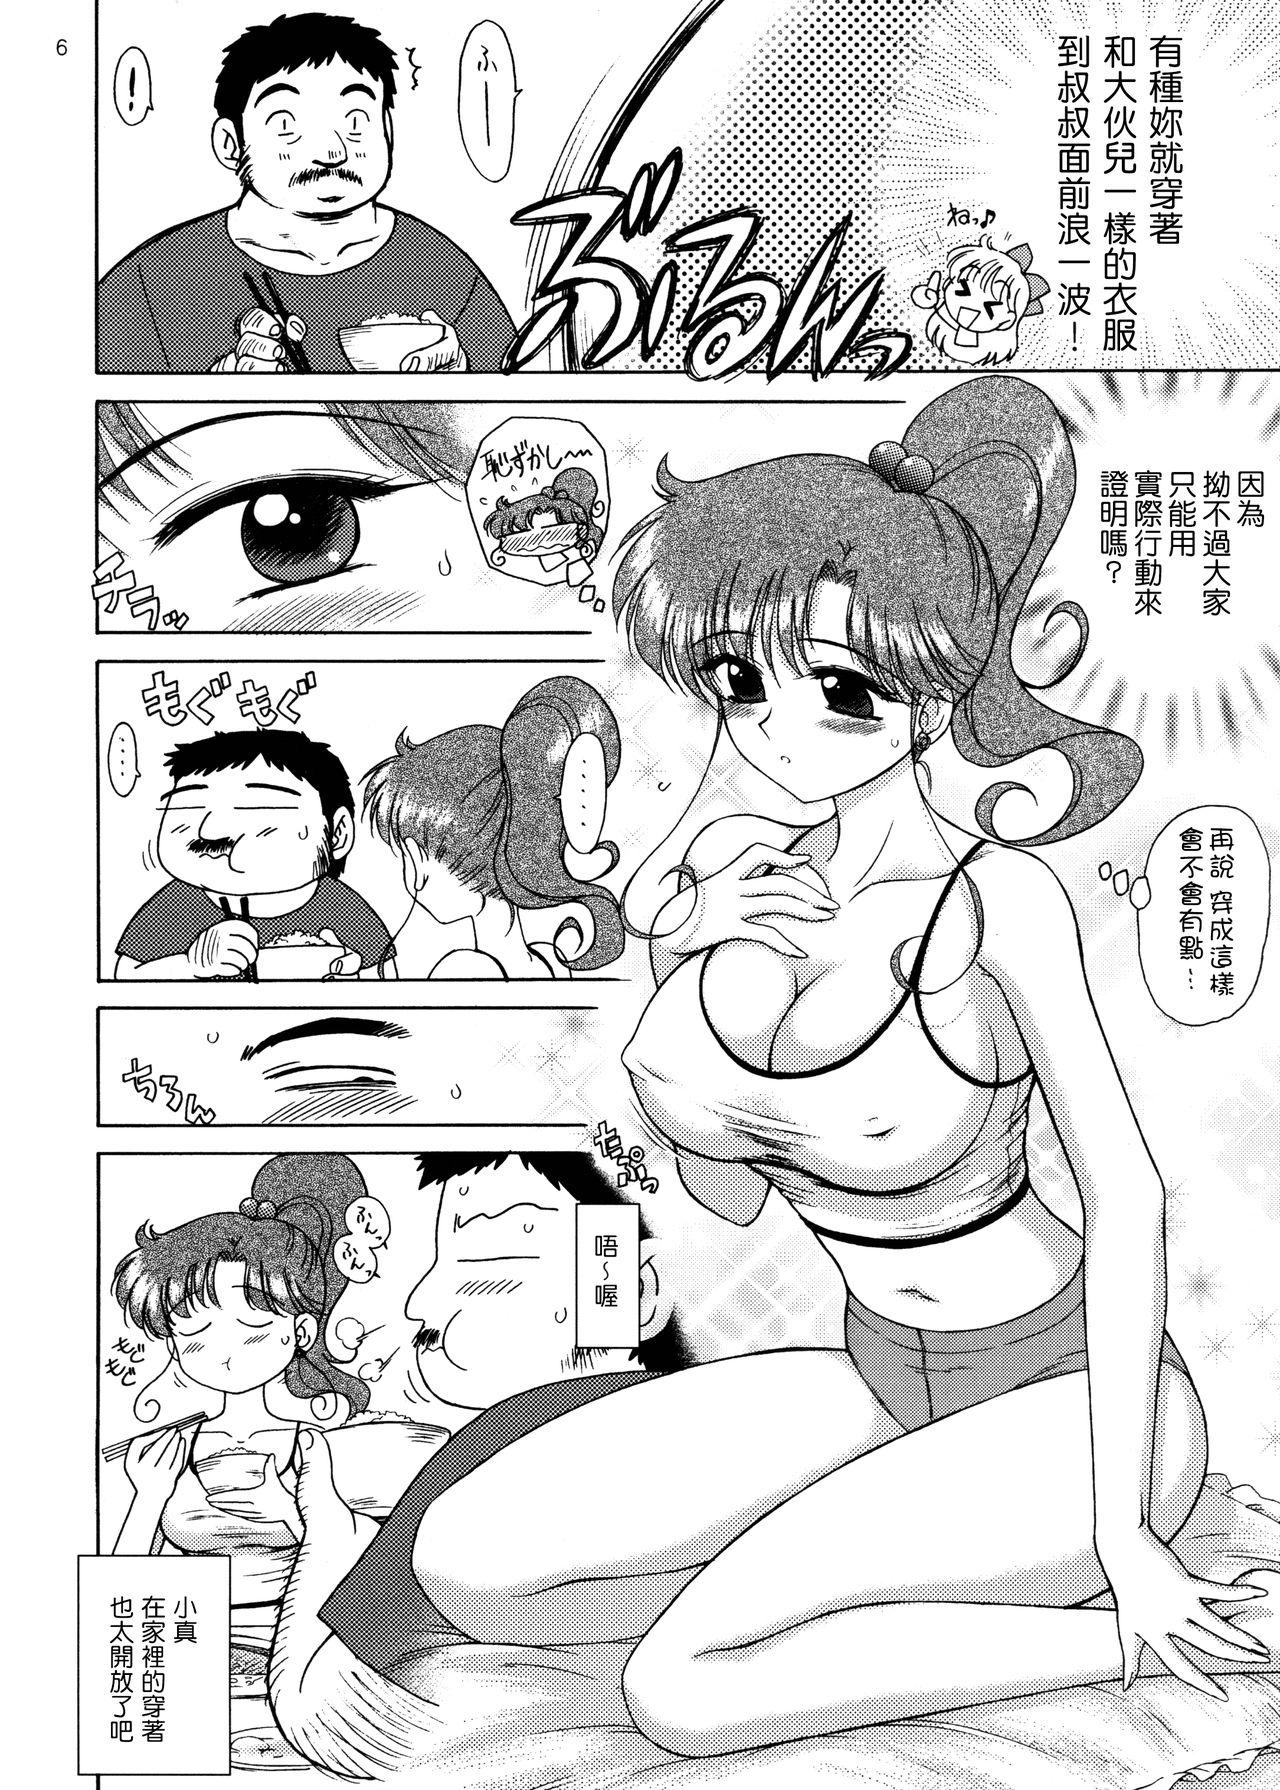 Chaturbate IN A SILENT WAY - Sailor moon | bishoujo senshi sailor moon Ftv Girls - Page 6